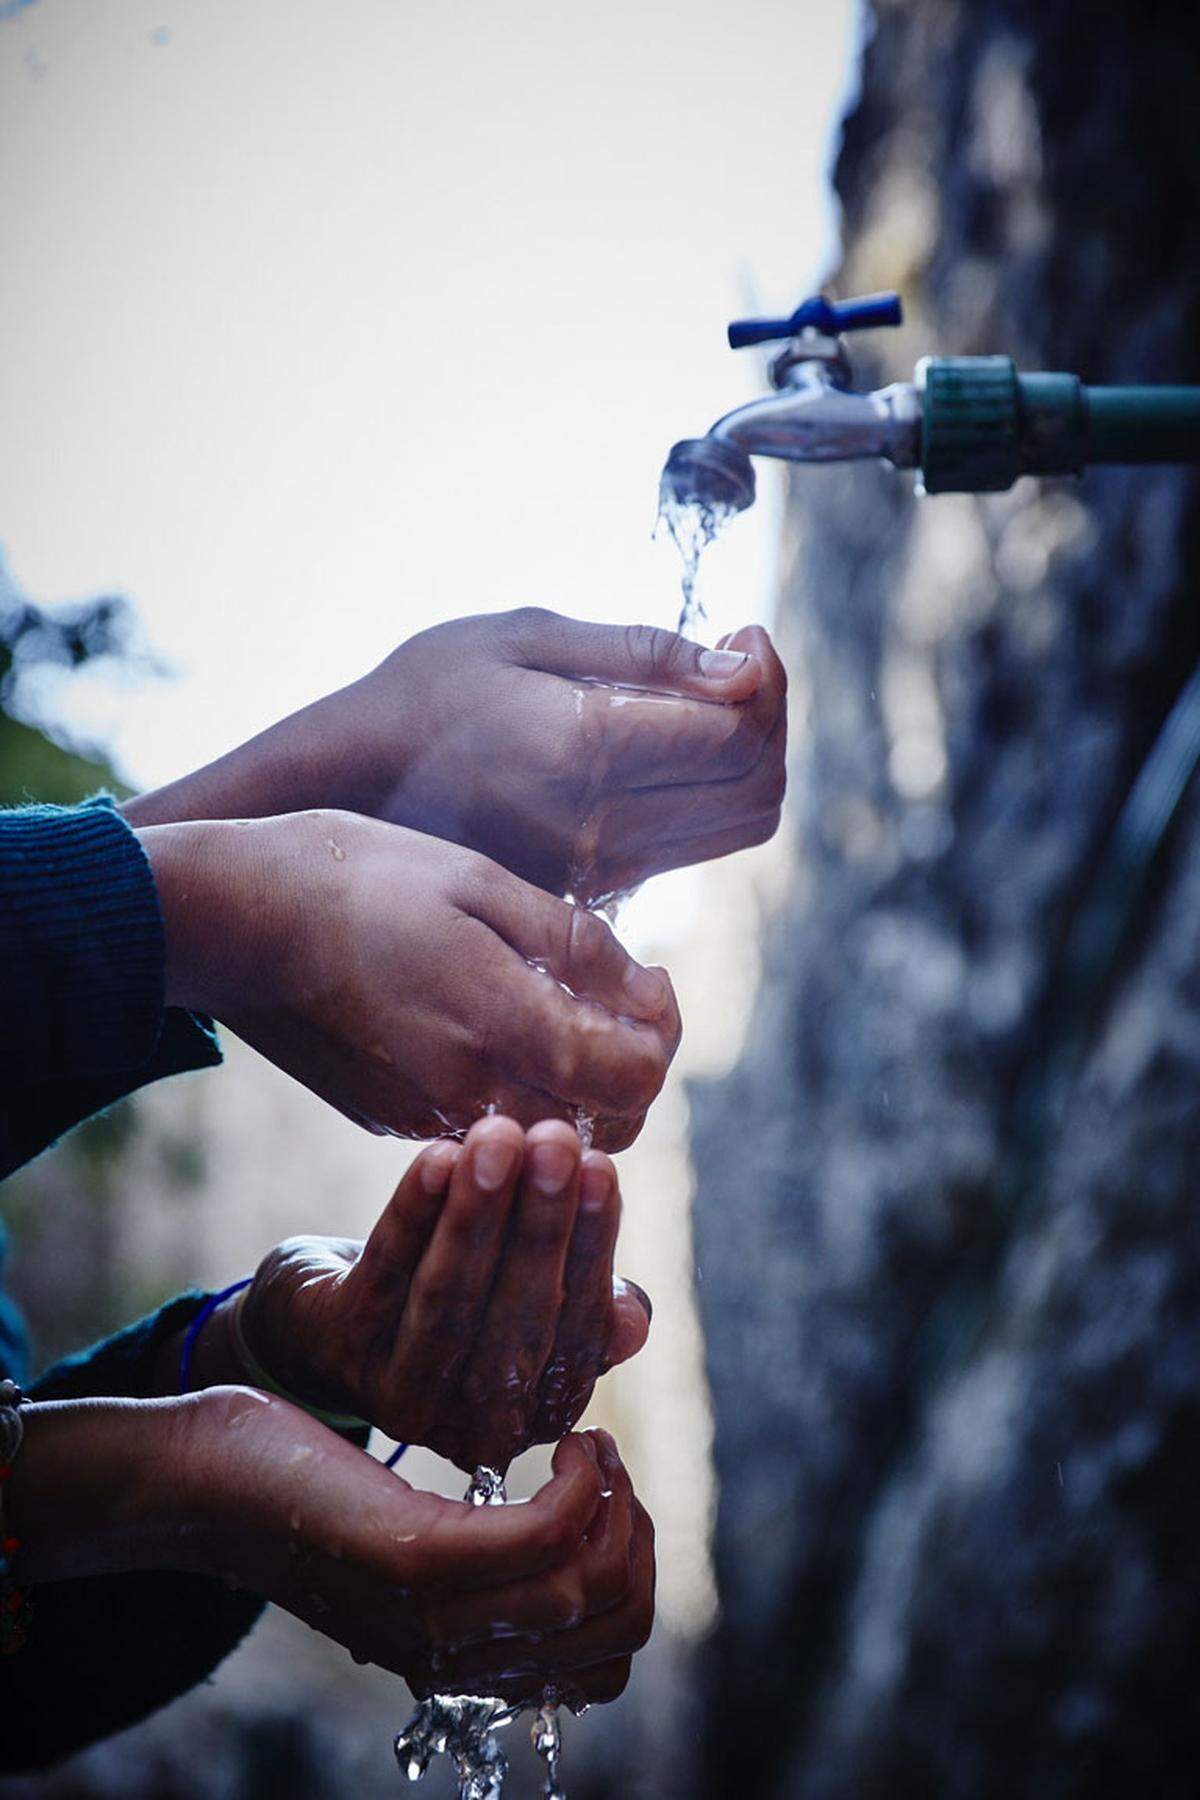 2011 rief Giorgio Armani Fragrances mit Unicef das Projekt Aqua for Life ins Leben um in über 100 Ländern sauberes Trinkwasser und Sanitäranlagen für Kinder zur Verfügung zu stellen. In über fünf Jahren wurden bereits 2.3 Millionen Dollar für das Projekt gesammelt.